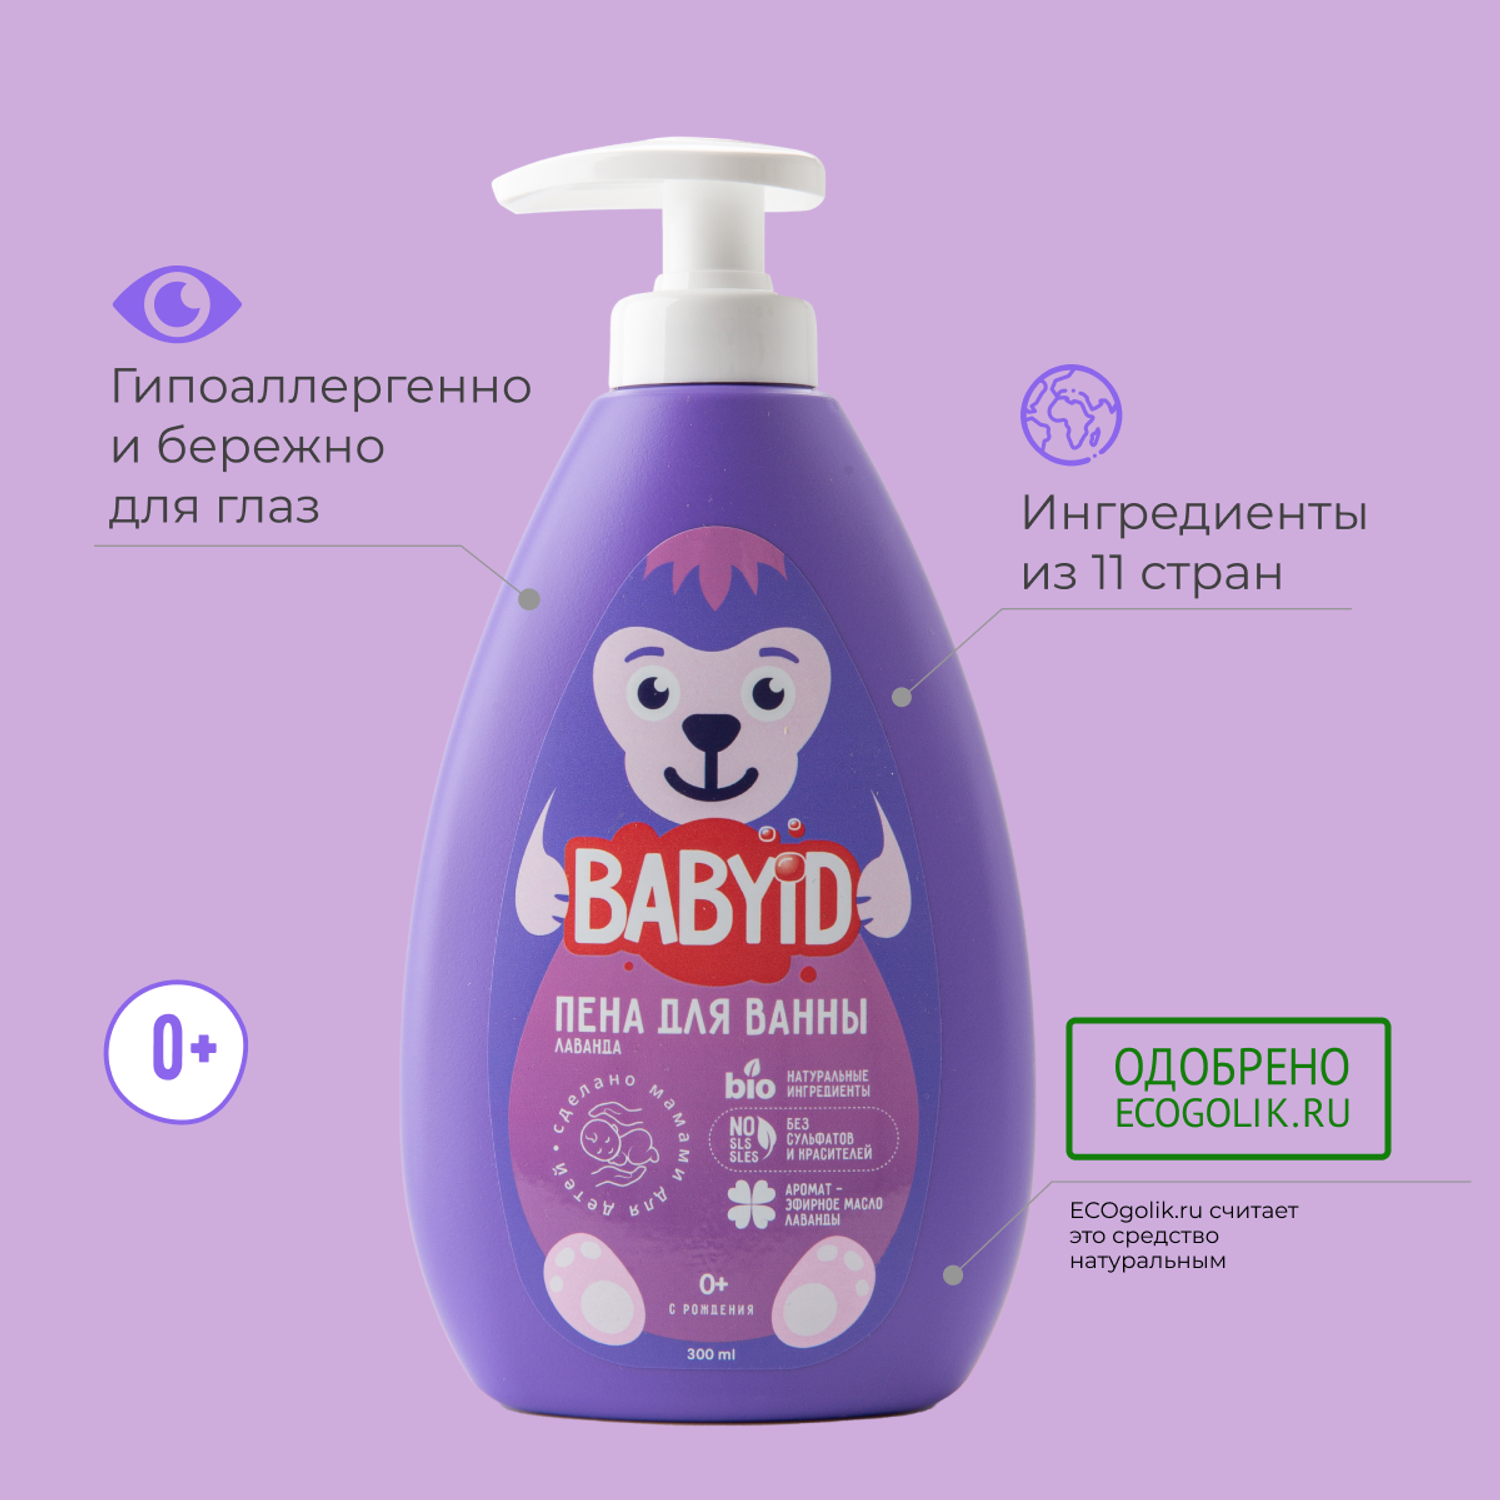 Пена для ванны BABYiD Детская без сульфатов с эфирным маслом и экстрактом лаванды 300 мл - фото 5